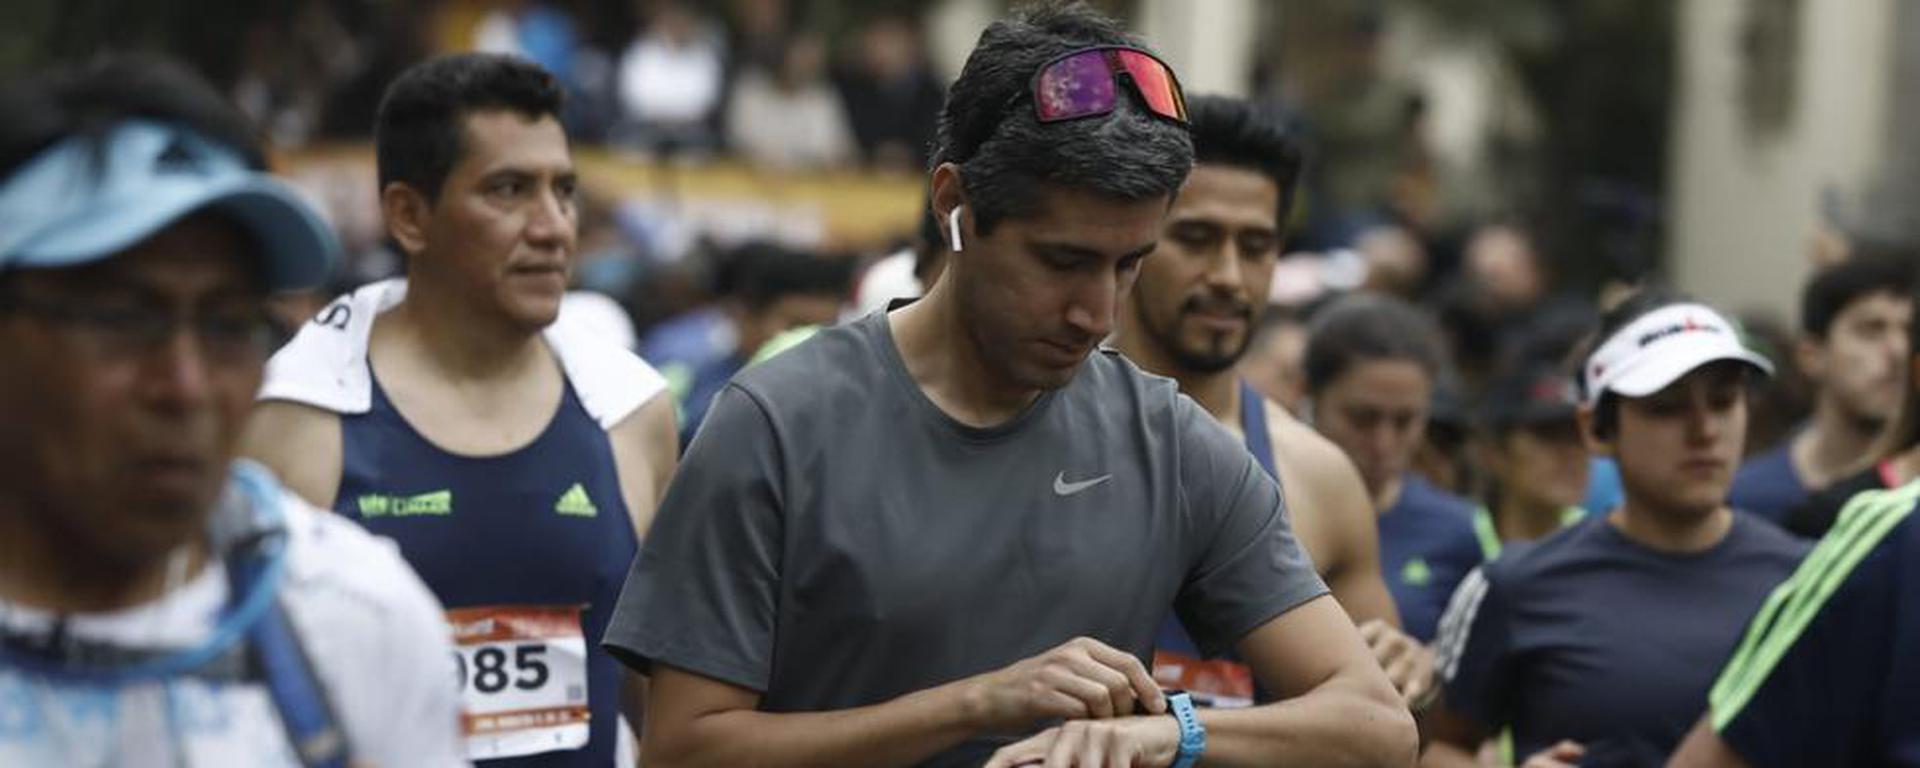 Maratón Lima42K: rutas, desvíos vehiculares y todo lo que va a ocurrir en Miraflores este domingo